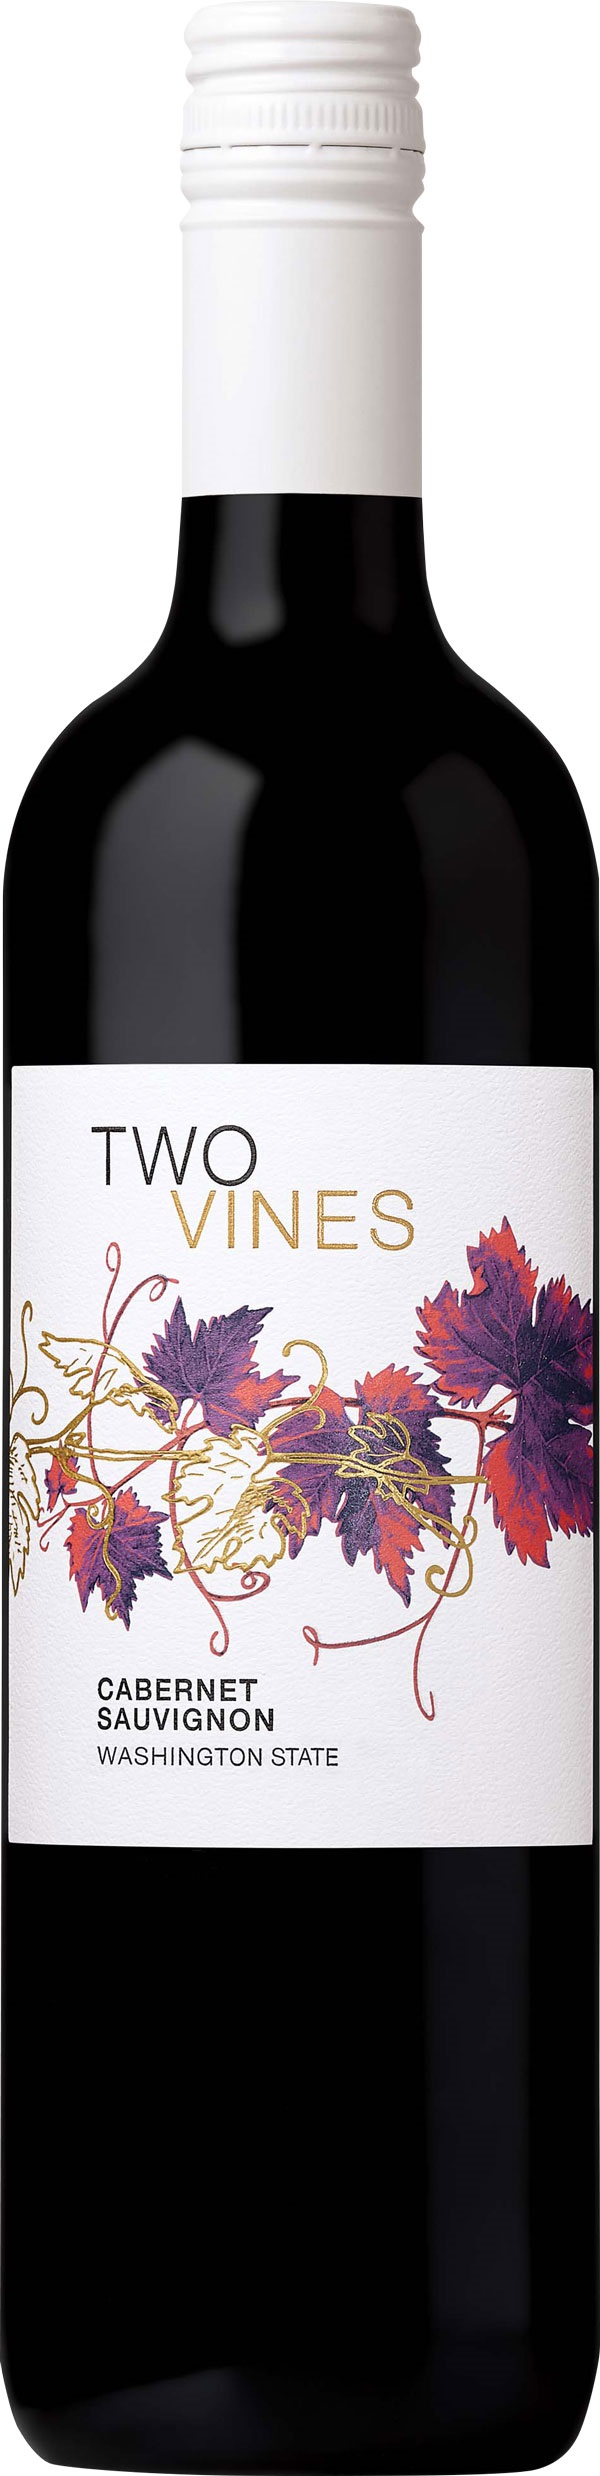 Two Vines Cabernet